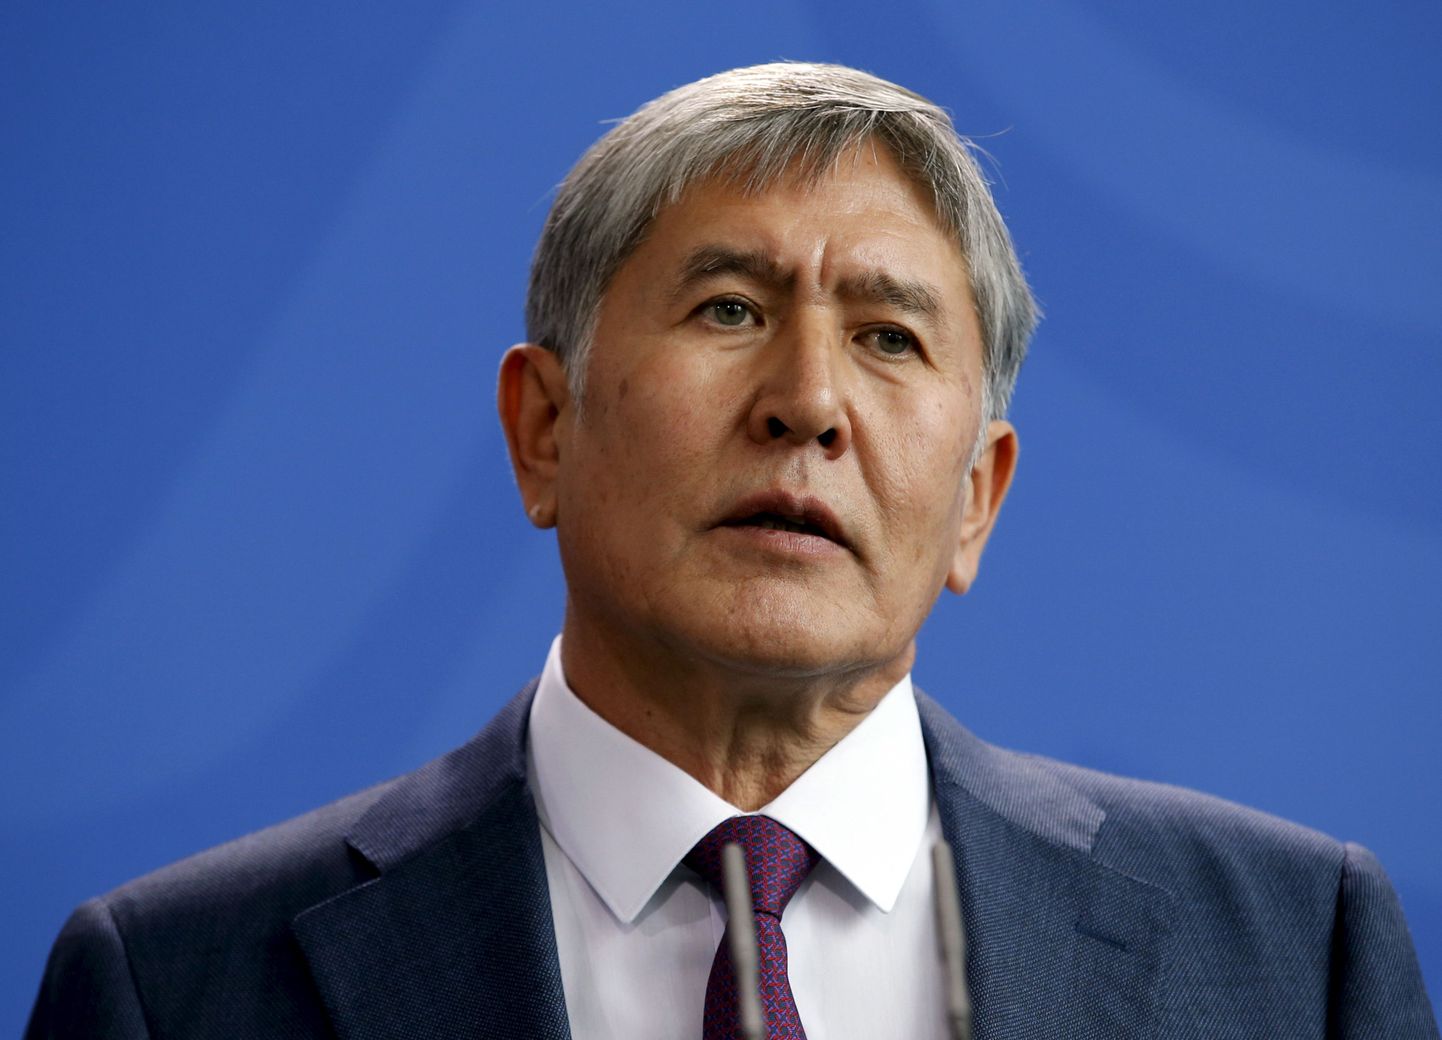 Kõrgõzstani endine president Almazbek Atambajev.